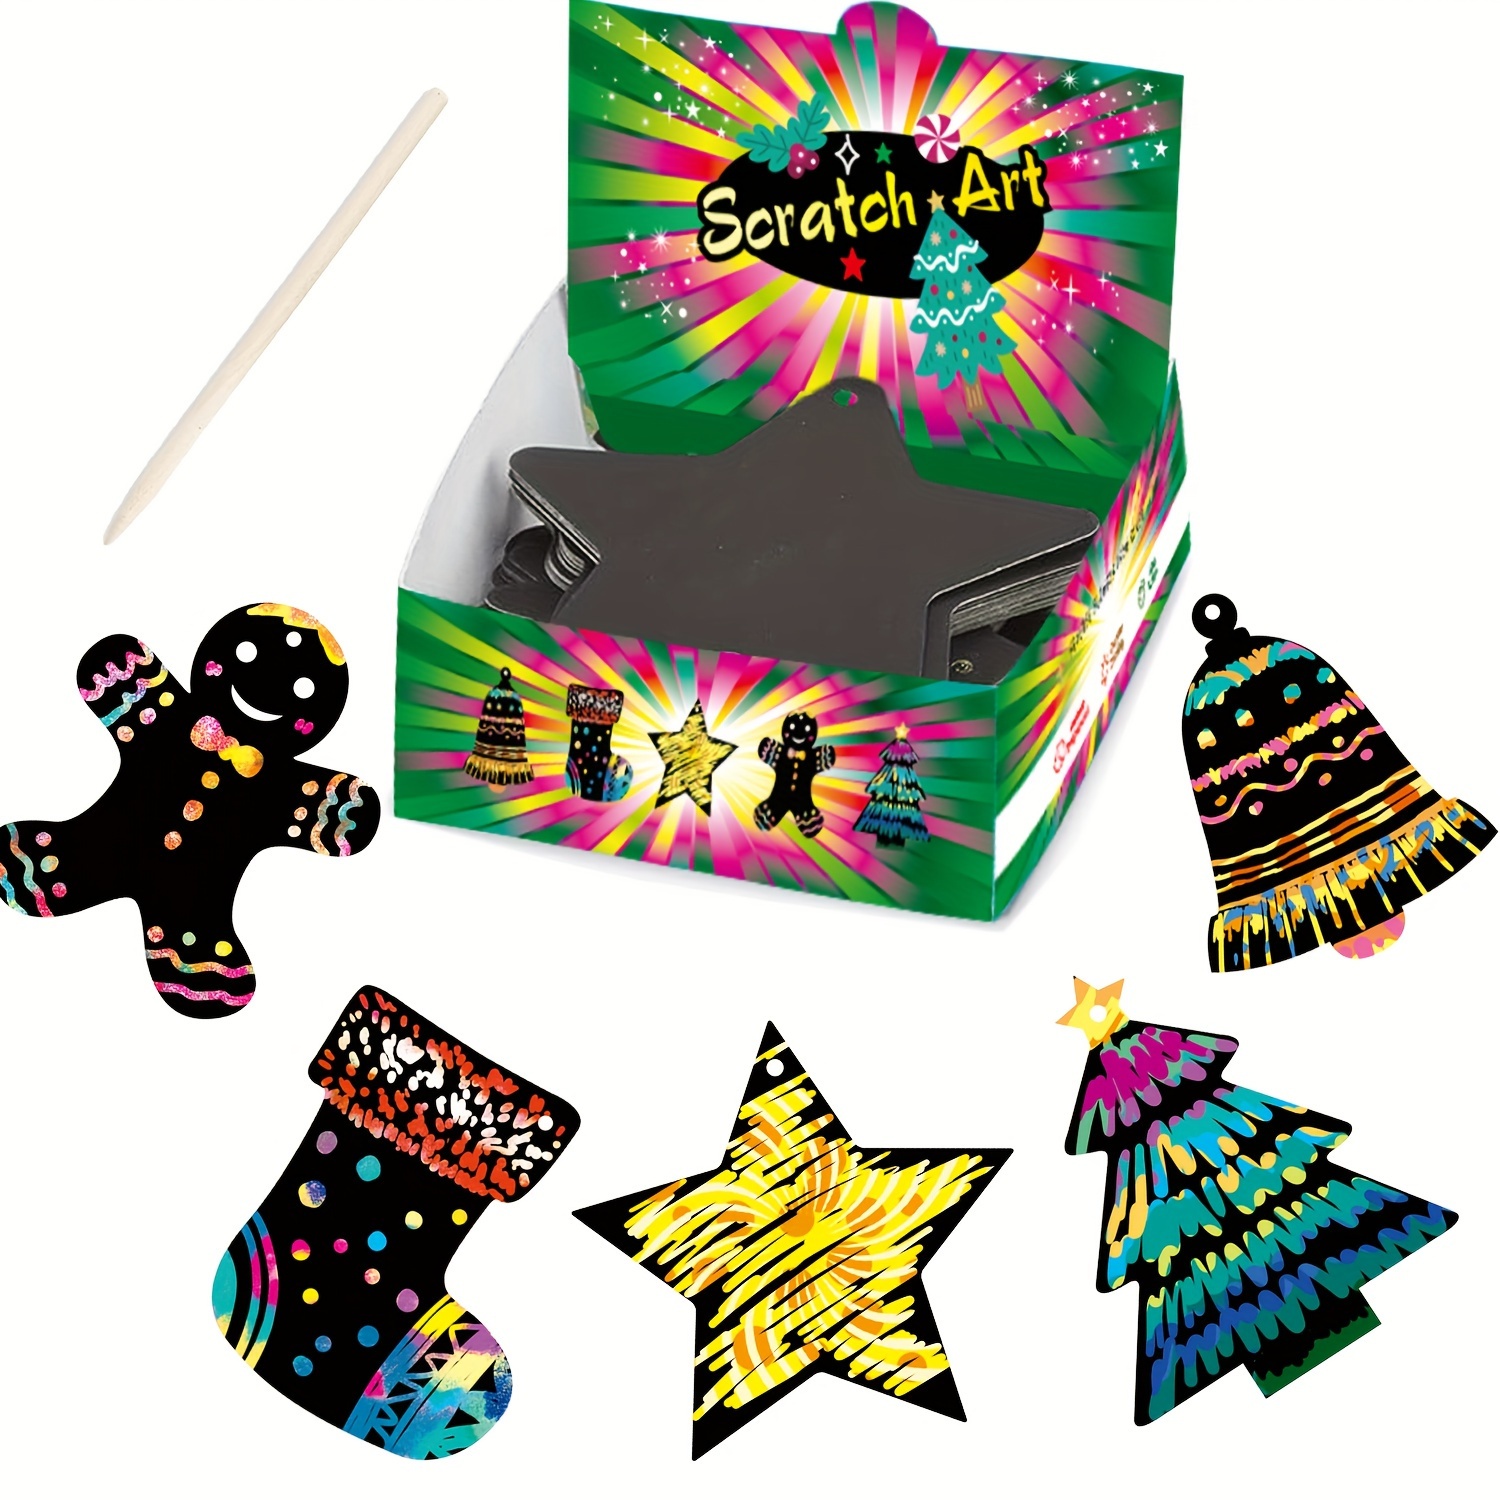 4 Stencil O Rainbow Mini Hanging Paper (100 Fogli) Con Penna Di Legno -  Colorful Scratch Art Crafts, Forniture Per Feste, Riempitivi Per Calze Di  Natale, Artigianato Per Bambini, Regali Creativi Per